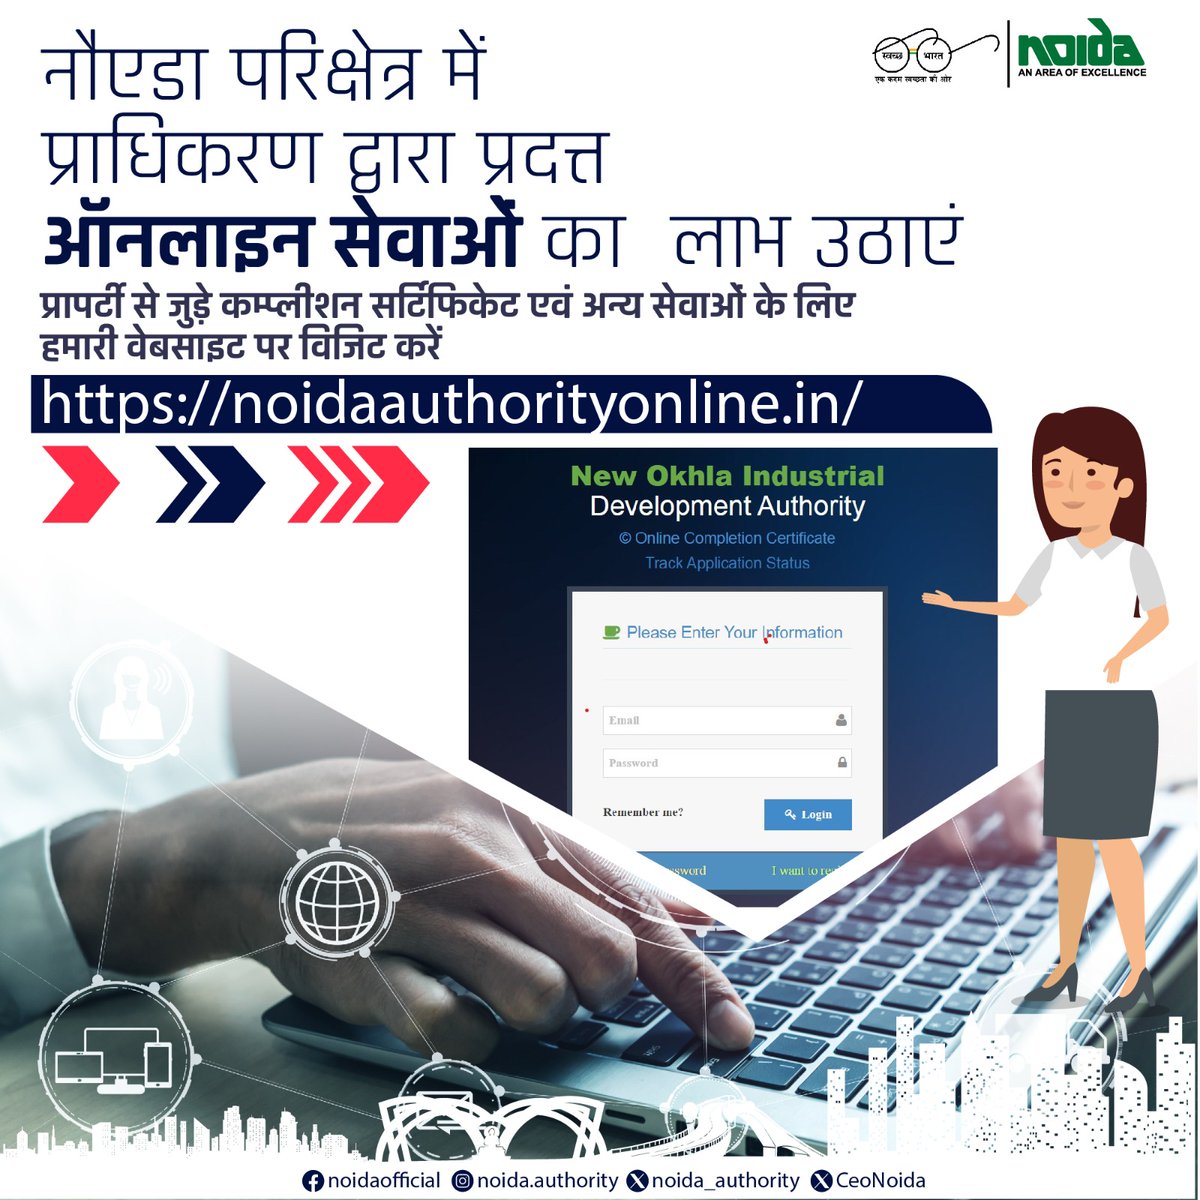 नौएडा परिक्षेत्र में प्राधिकरण द्वारा प्रदत्त की जा रही ऑनलाइन सेवाओं का लाभ उठाएं

प्रापर्टी से जुड़े कम्प्लीशन सर्टिफिकेट एवं अन्य सेवाओं के लिए हमारी वेबसाइट पर विजिट करें - noidaauthorityonline.in

#NoidaAuthority
#OnlineService
#CompletionCertificat